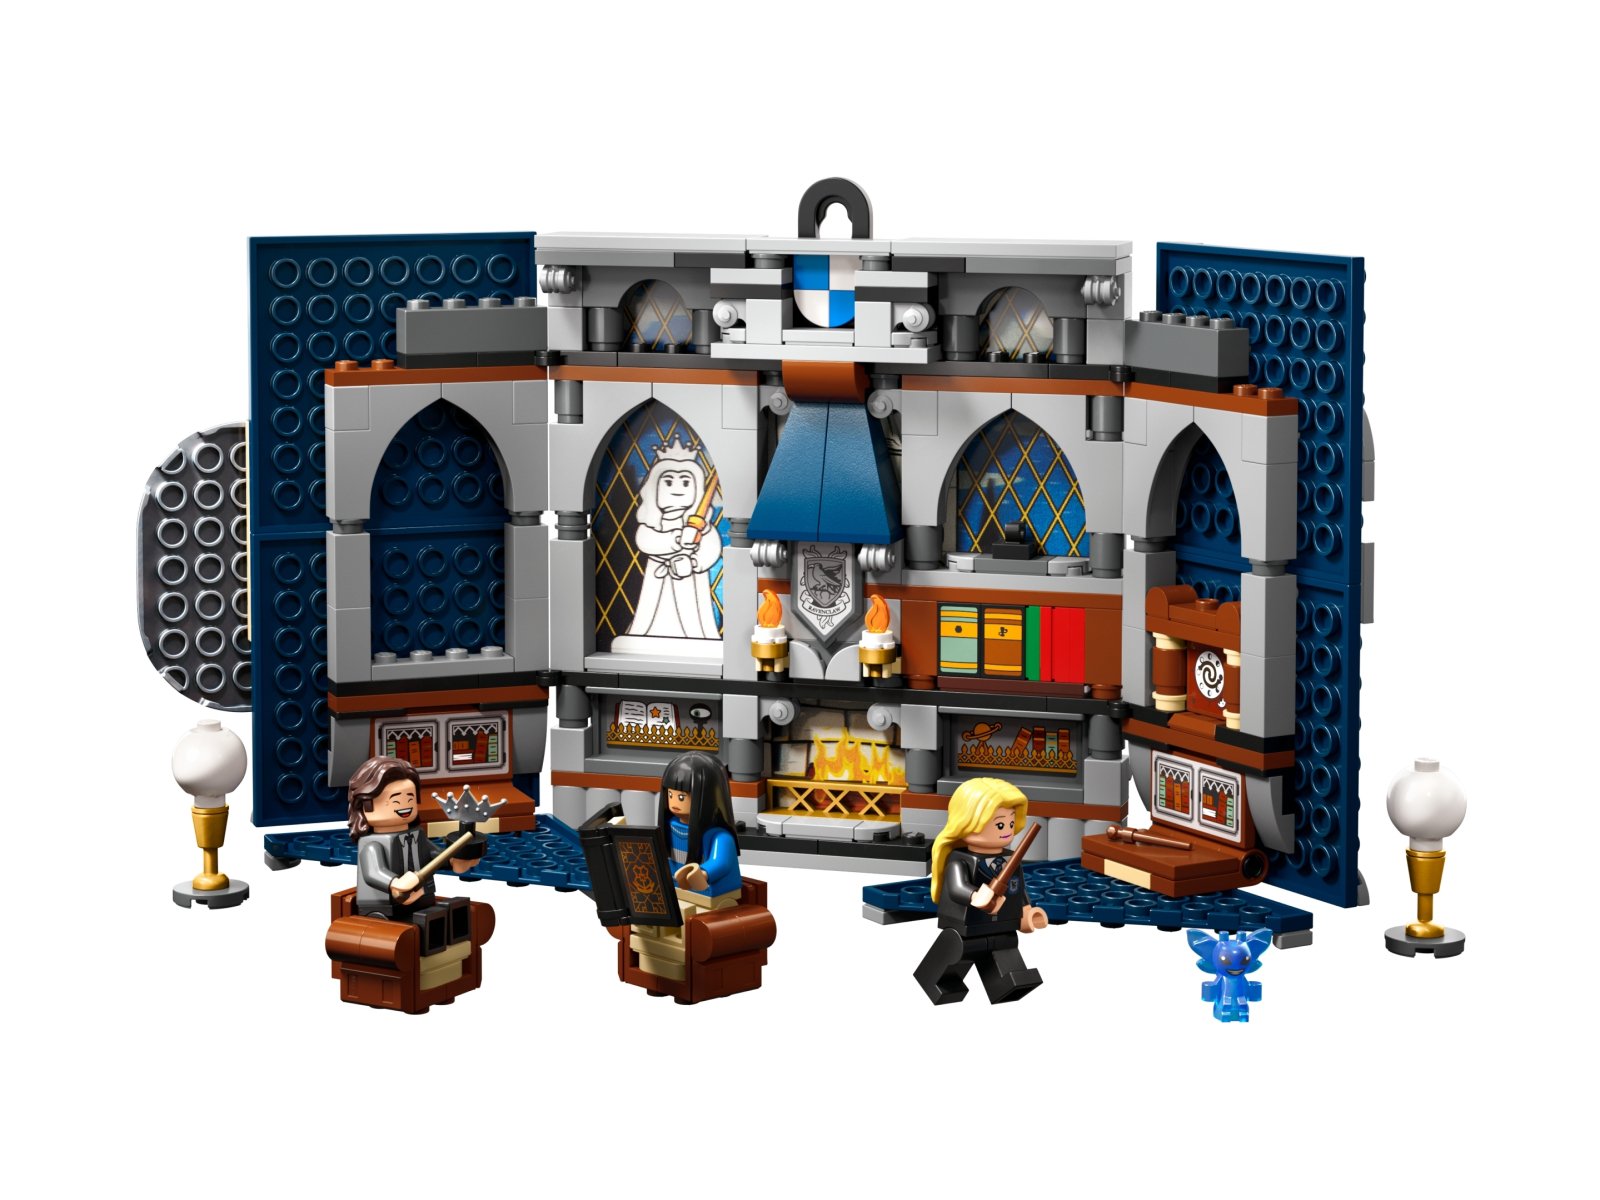 LEGO Harry Potter 76411 Flaga Ravenclawu™